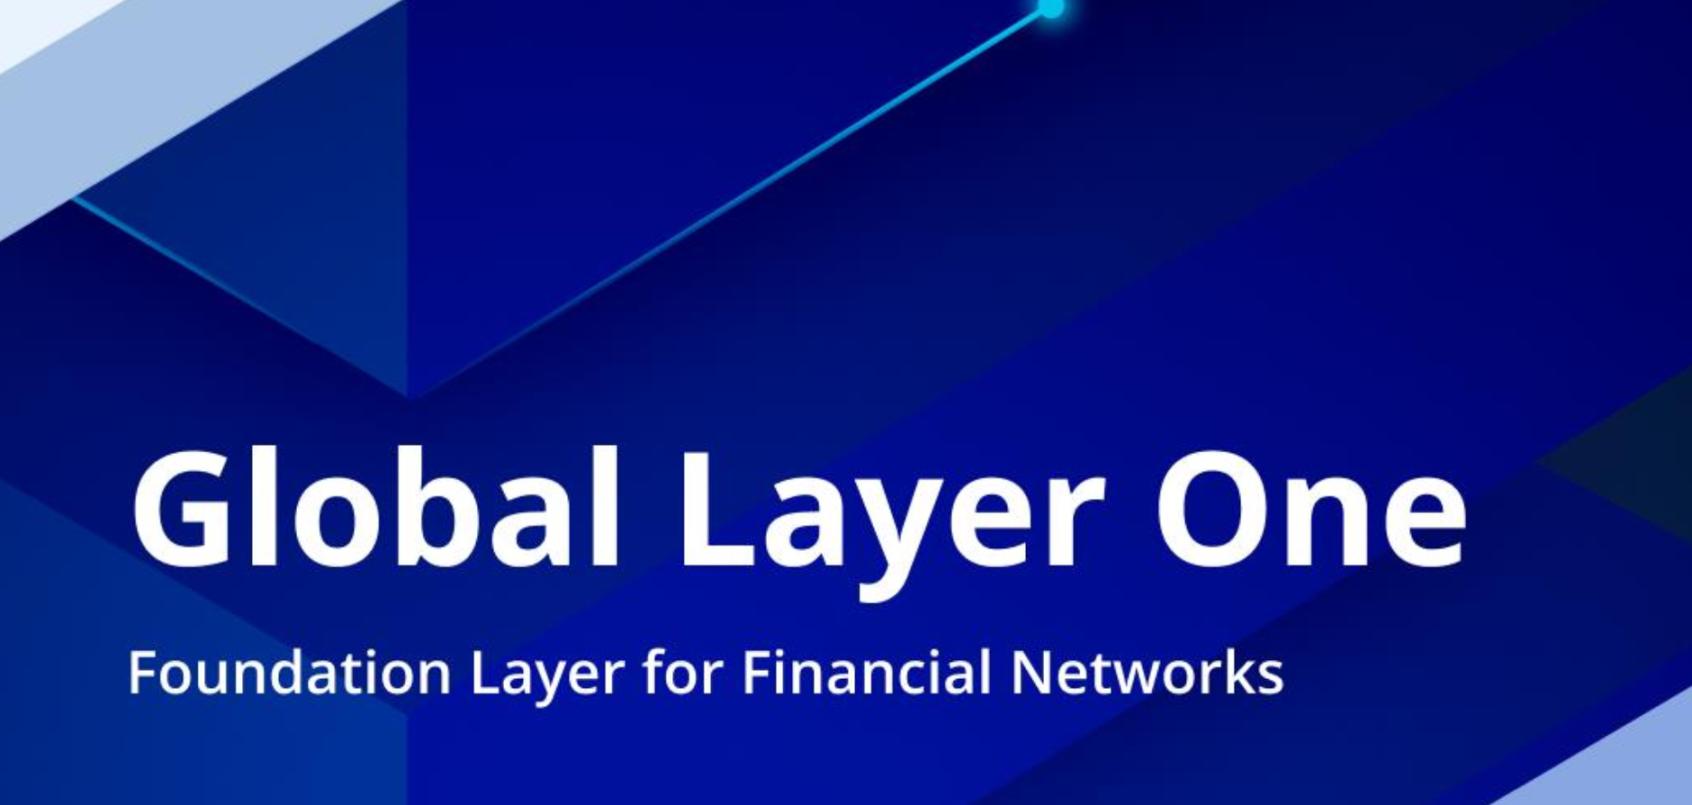 萬字解讀新加坡金管局《全球Layer 1 - 金融網絡的基礎層》白皮書